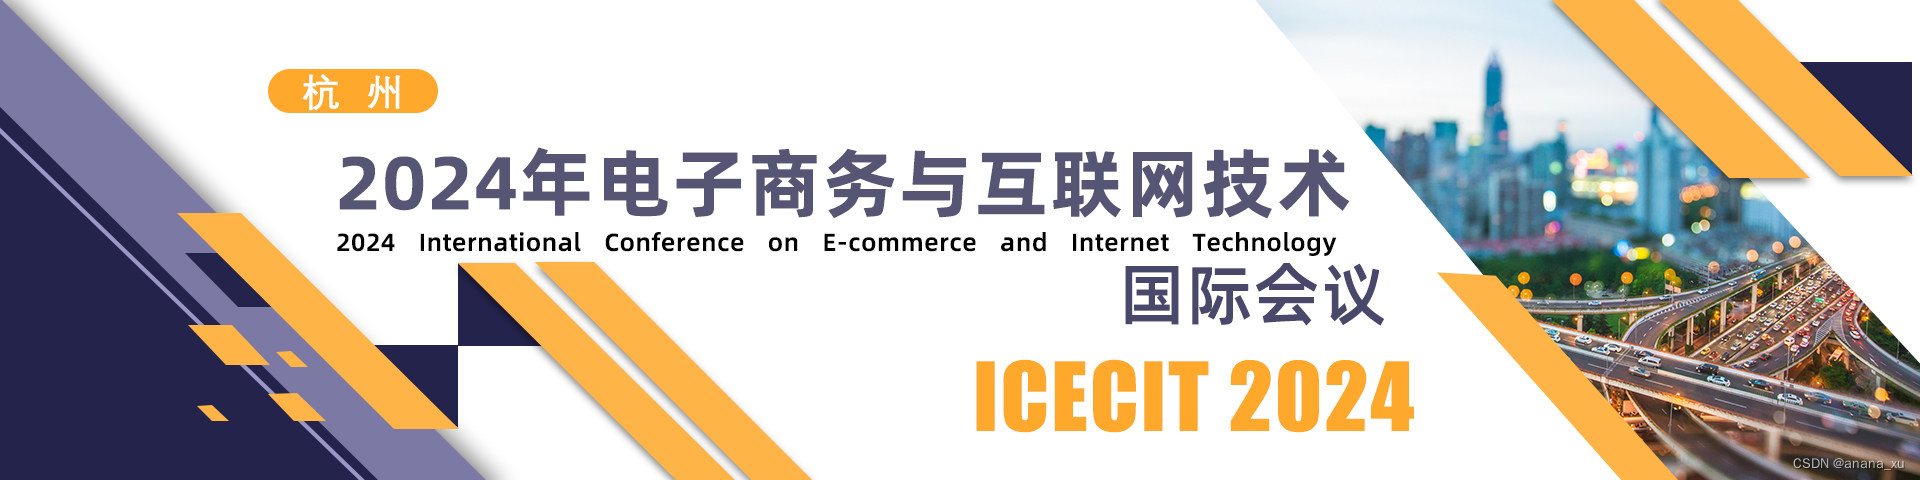 2024电子商务与互联网技术国际会议（ICECIT 2024)